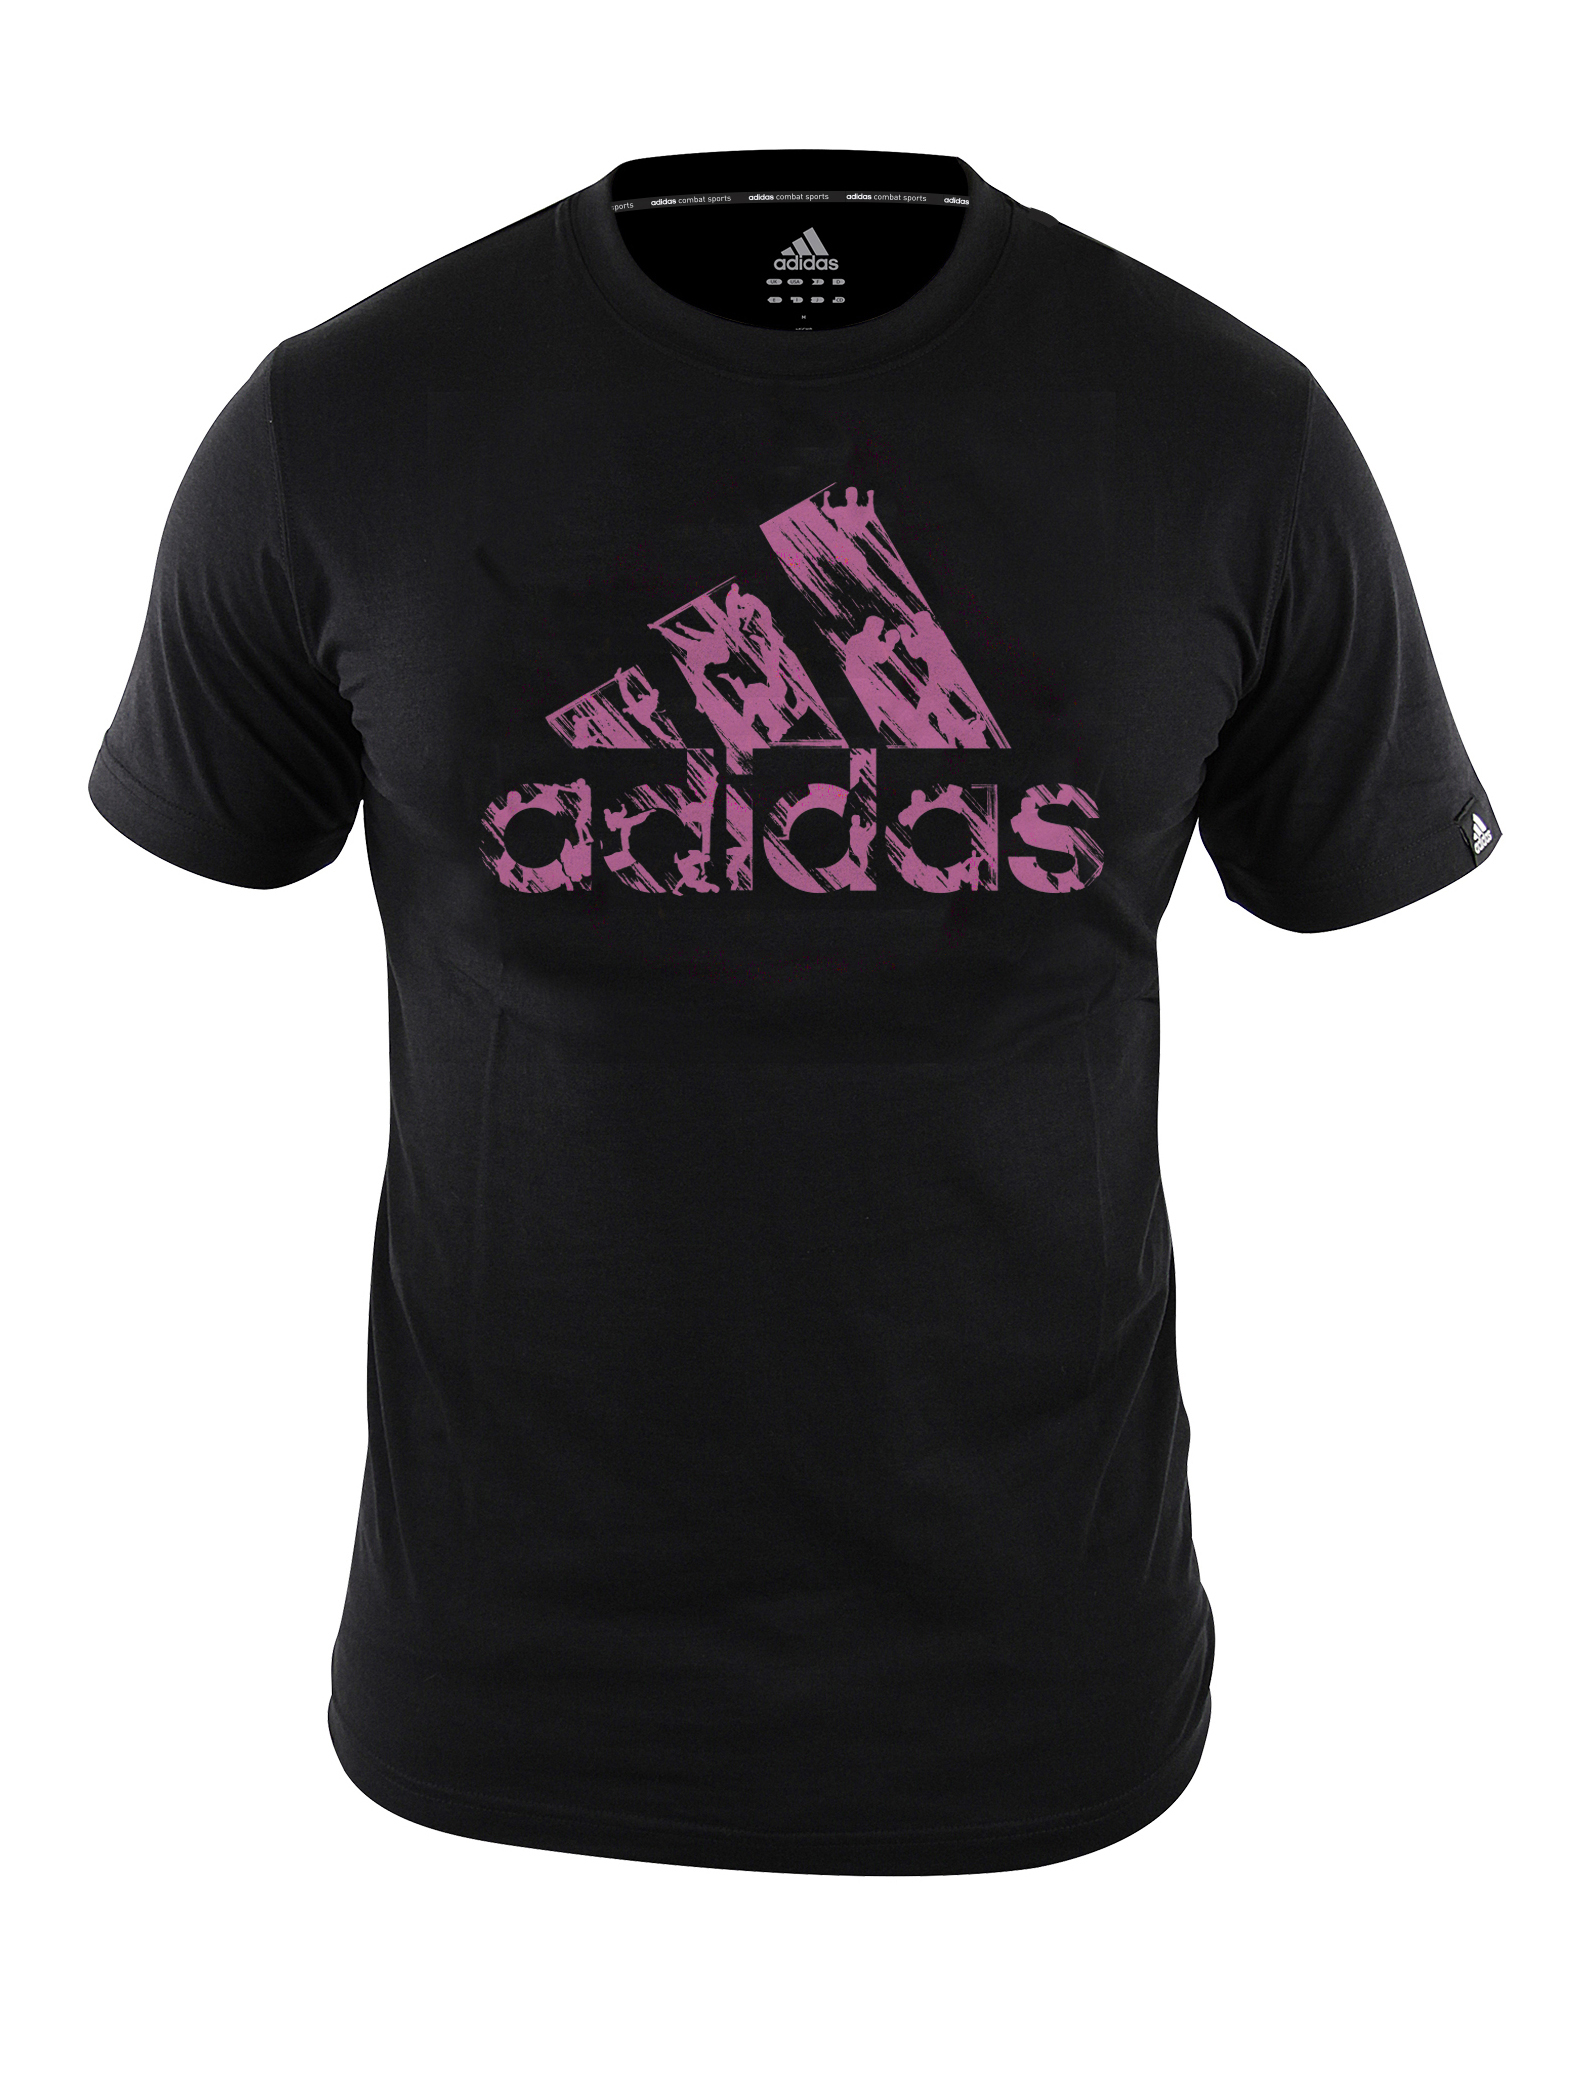 T-shirt Adidas graphic noir et rose